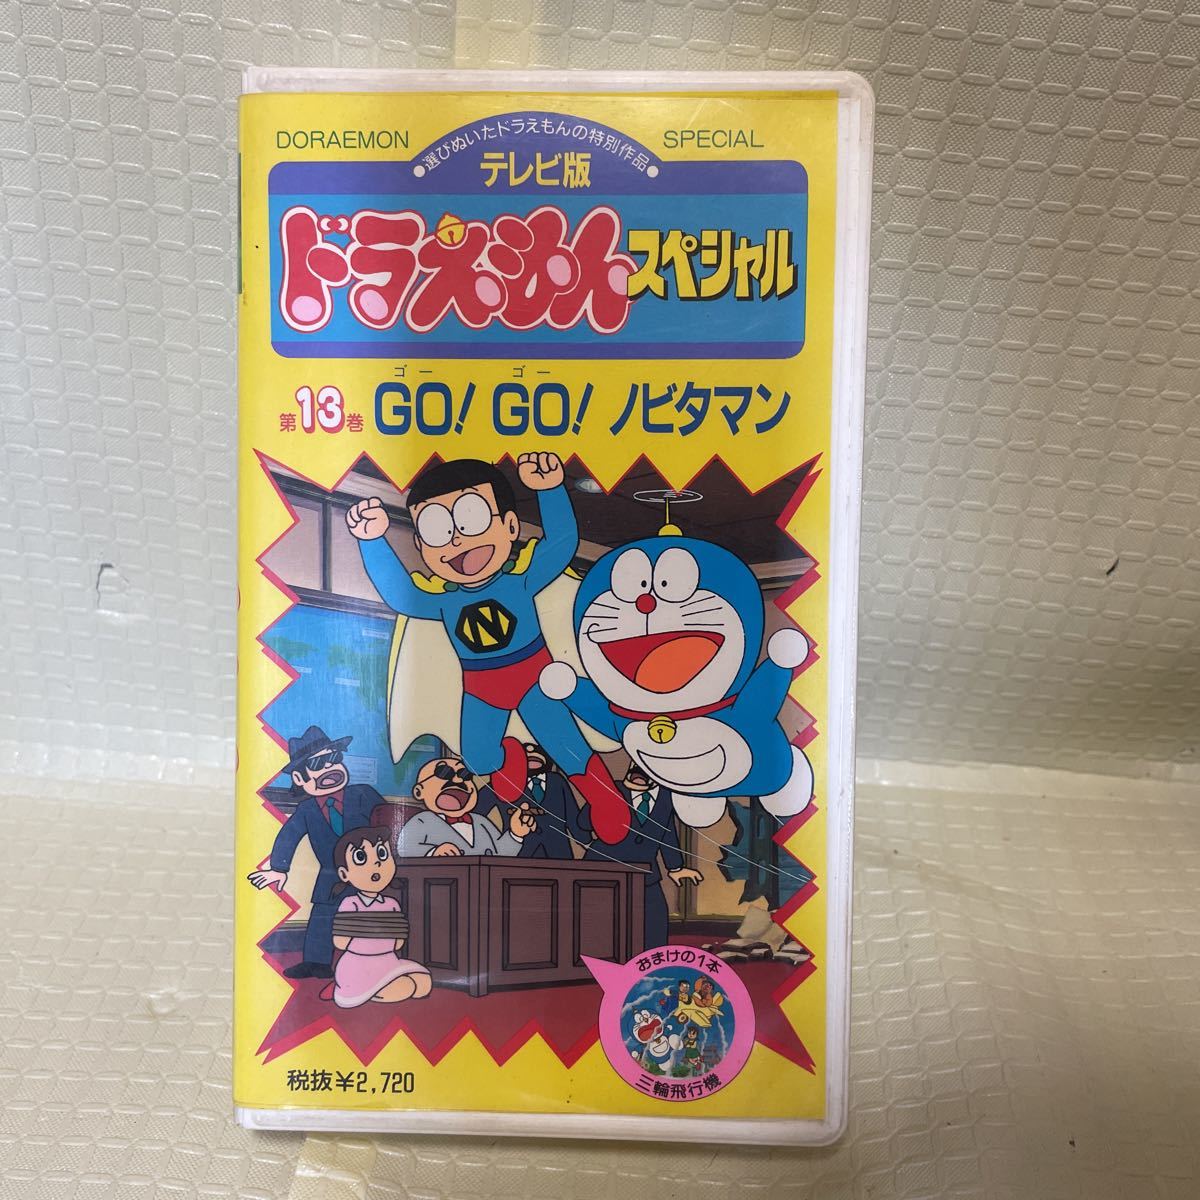 テレビ版 ドラえもんスペシャル 第13巻 GO!GO! ノビタマン 小学館 コロコロコミック 全て再生確認済み VHS 11